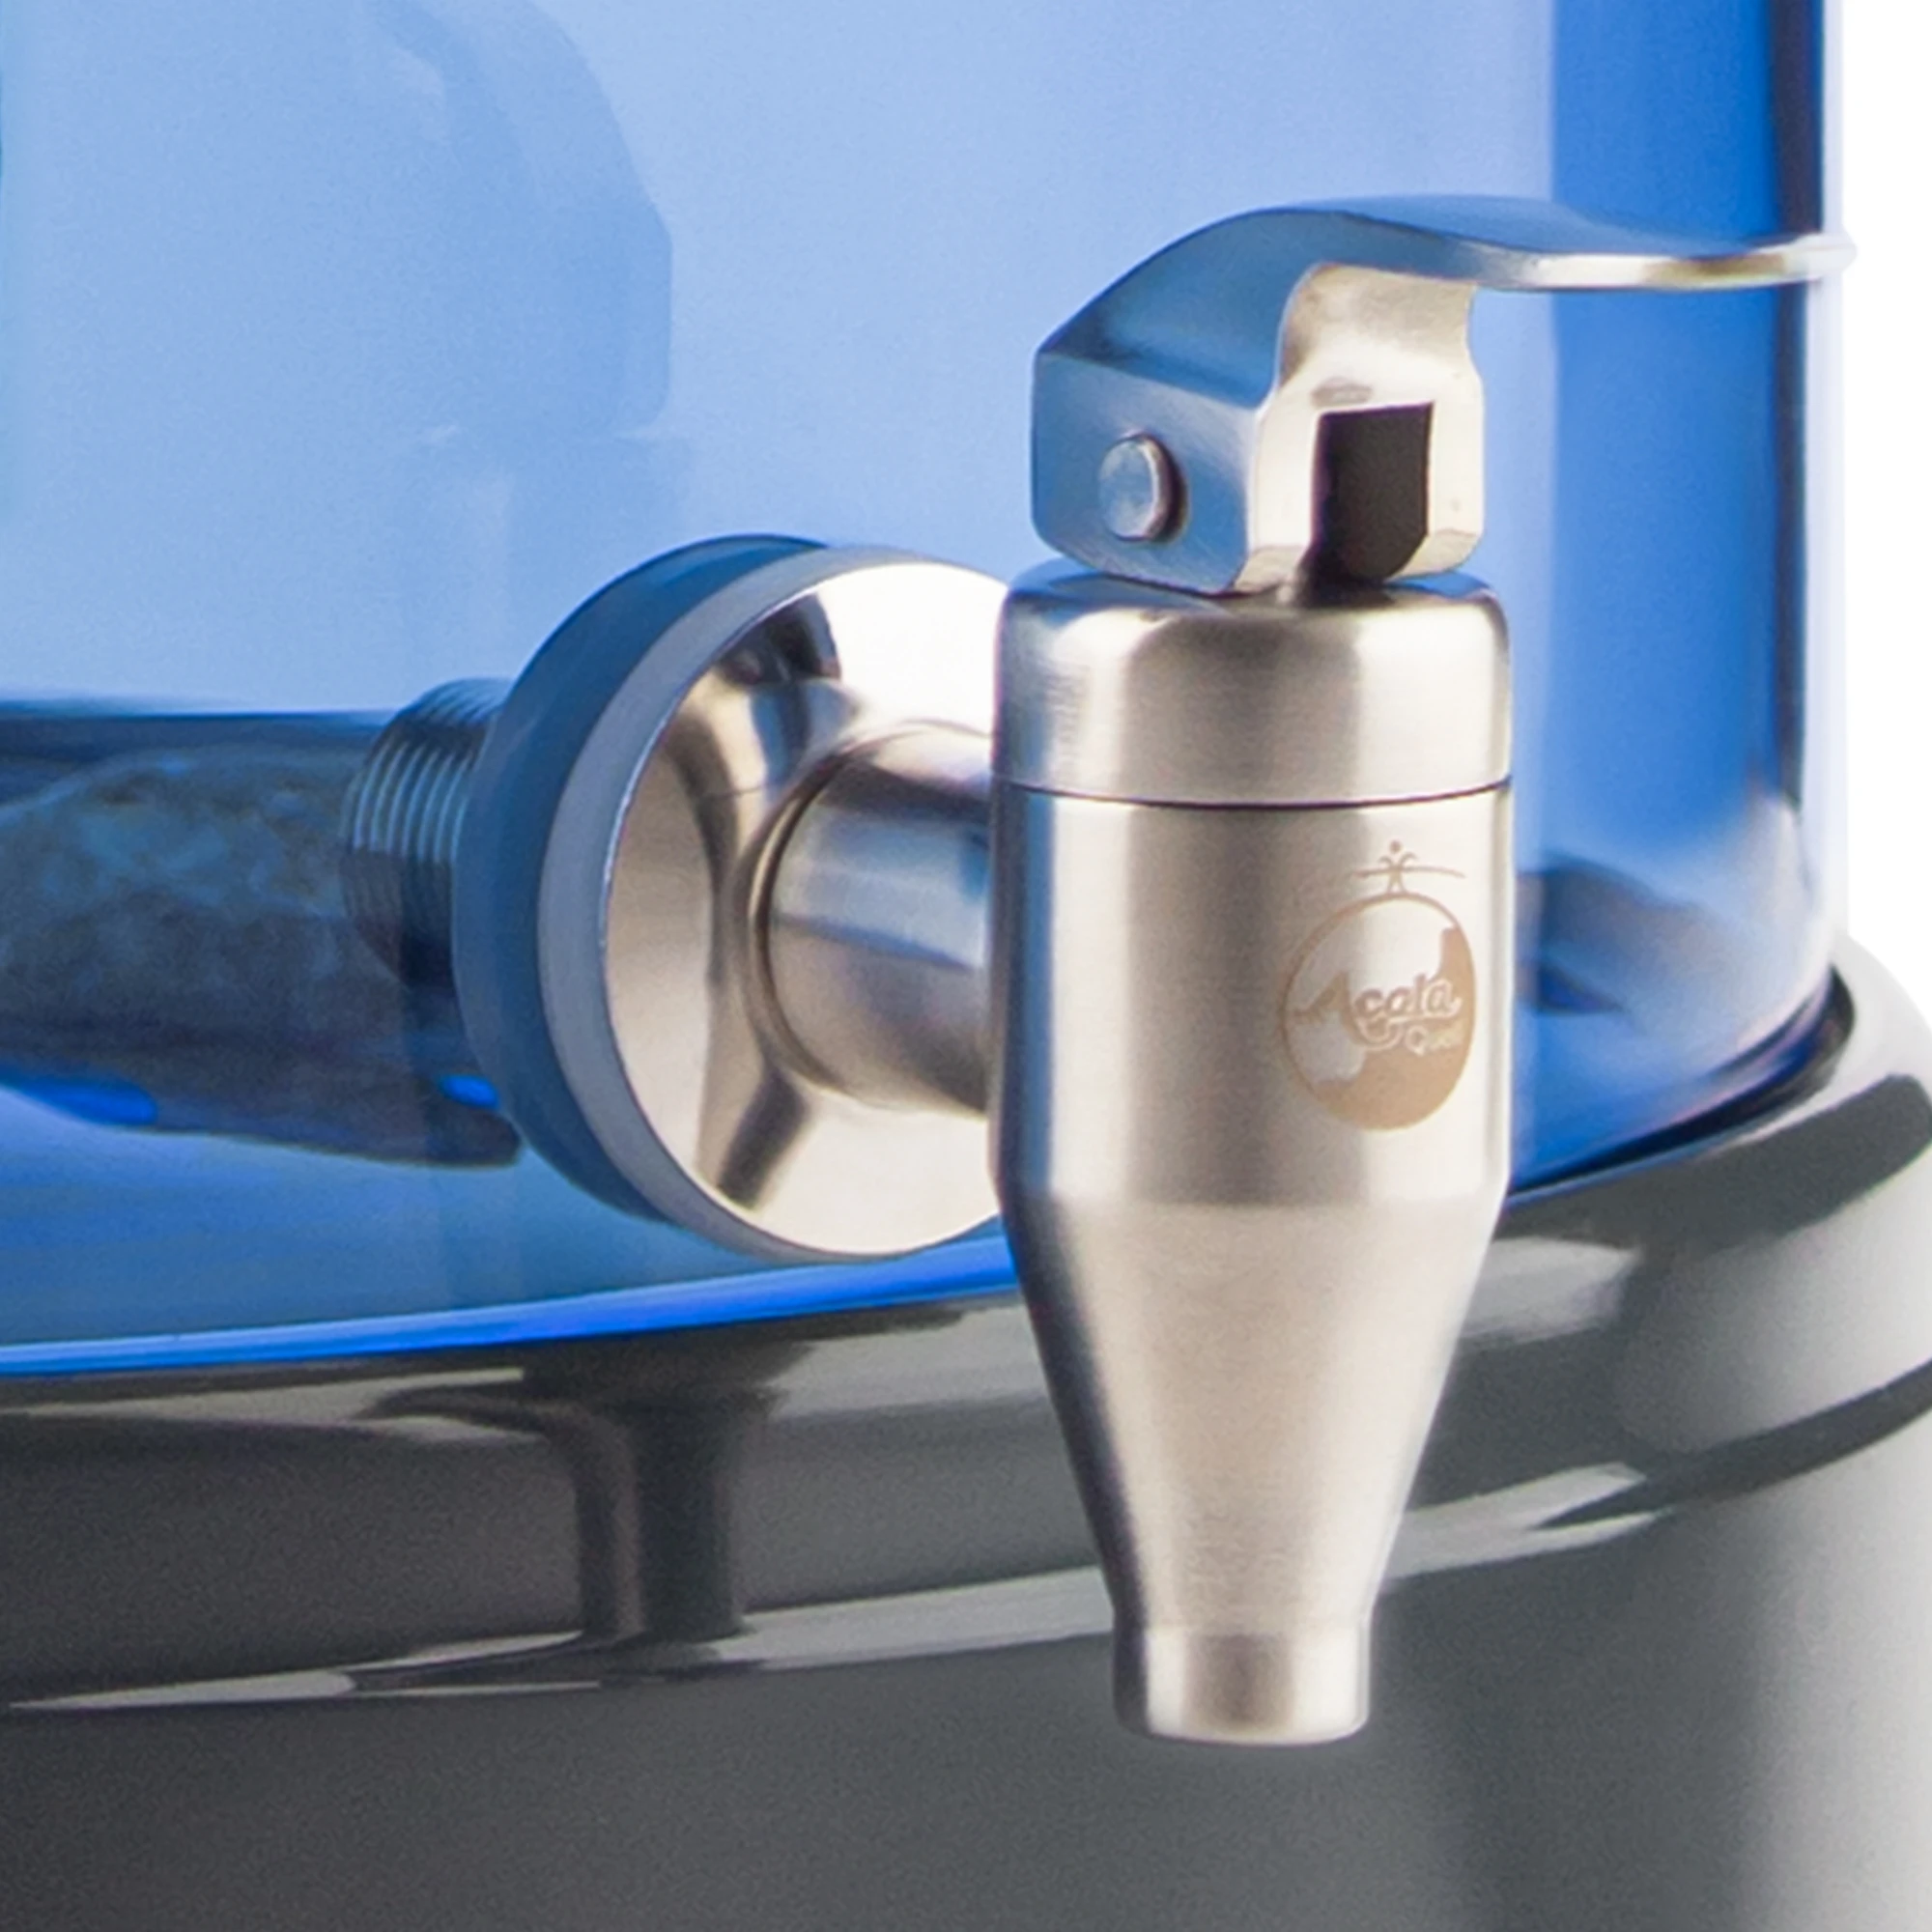 Zu sehen ist der Edelstahl Wasserhahn Yamashita für Standfilter an einem Glastank in blau montiert. Der Hahn ist silber, man sieht vorne das AcalaQuell Logo darauf. Der Hebel zum öffnen ist nach vorne gedreht.